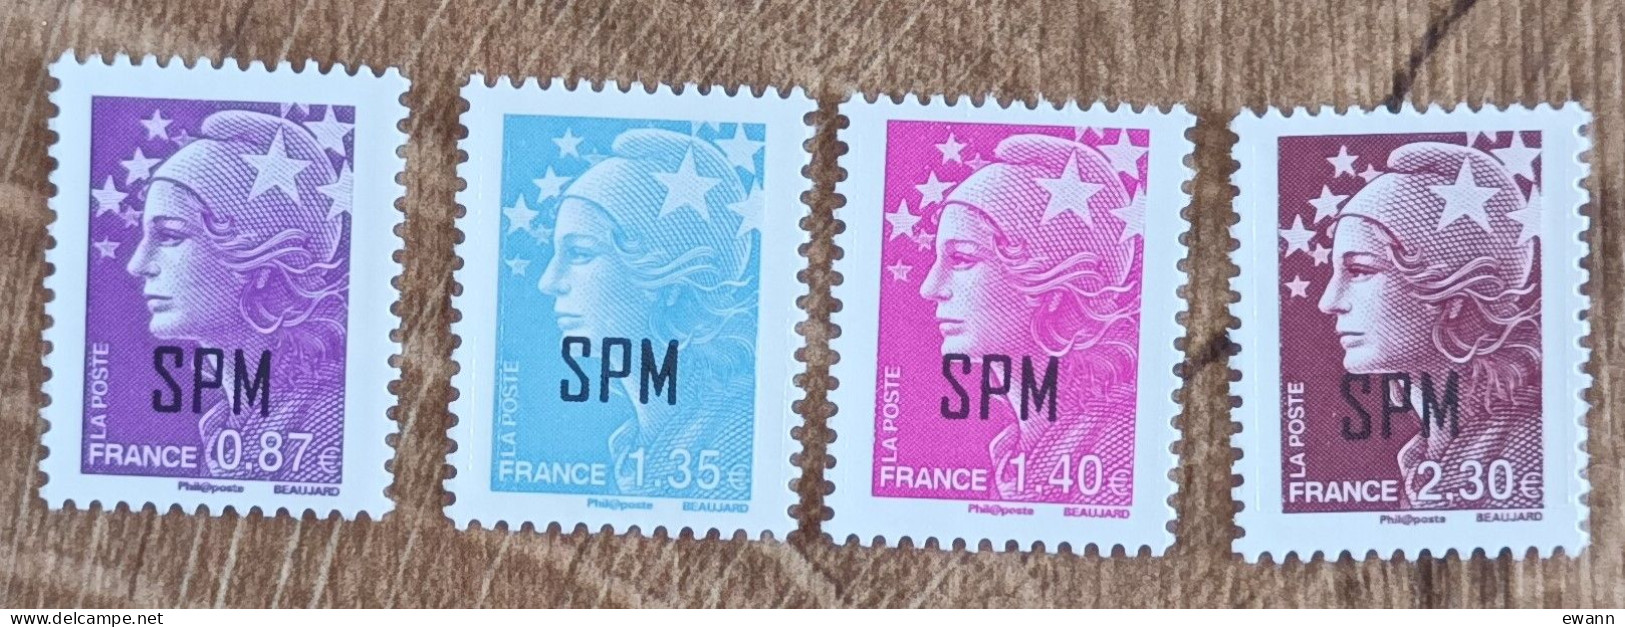 Saint Pierre Et Miquelon - YT N°995 à 998 - Marianne De Beaujard - 2011 - Neuf - Unused Stamps